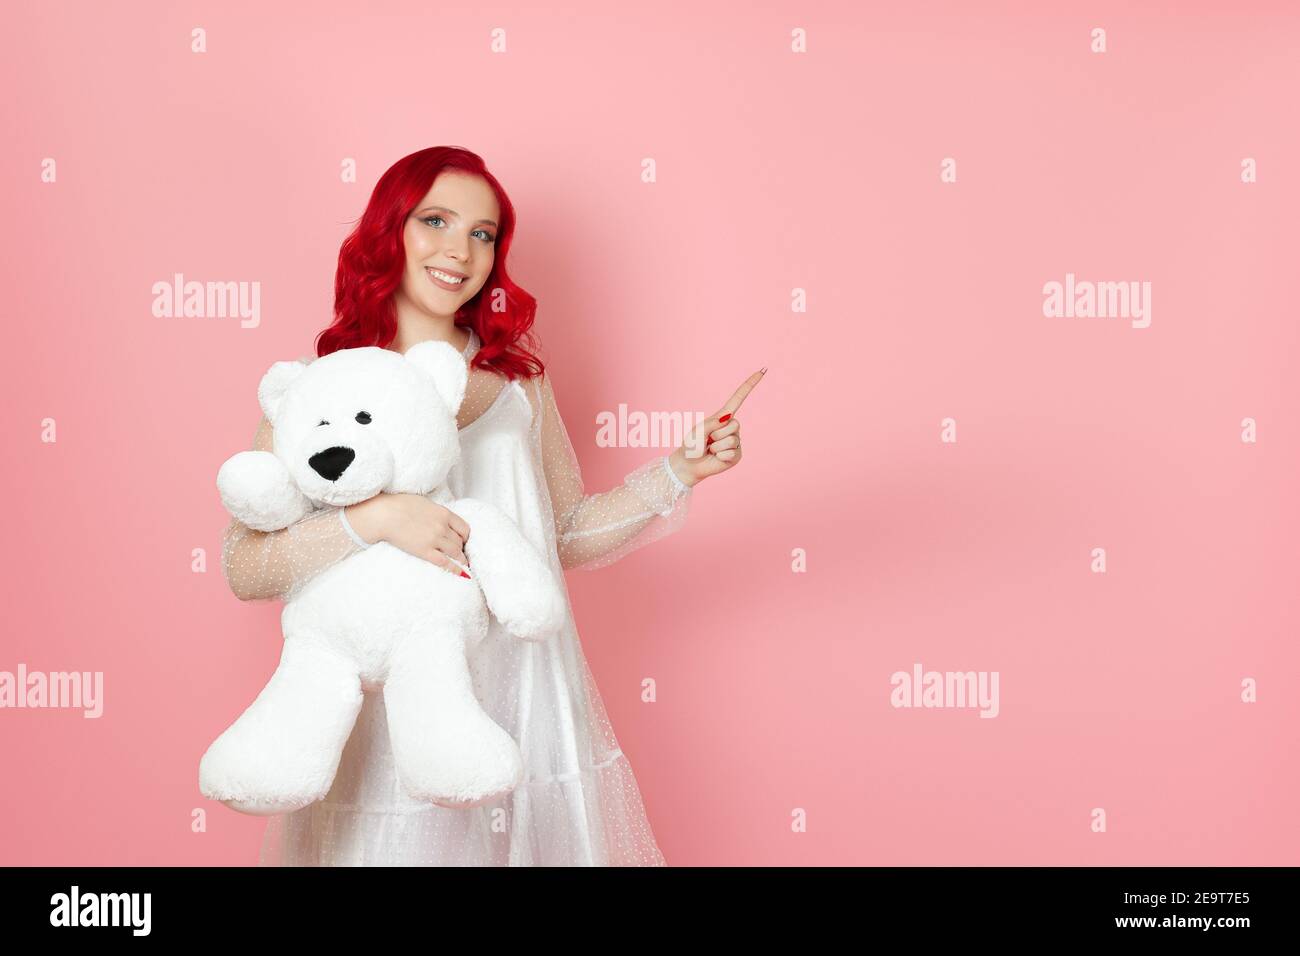 femme avec les cheveux rouges tient grand ours blanc teddy et pointe avec son index vers un espace vide pour le texte Banque D'Images